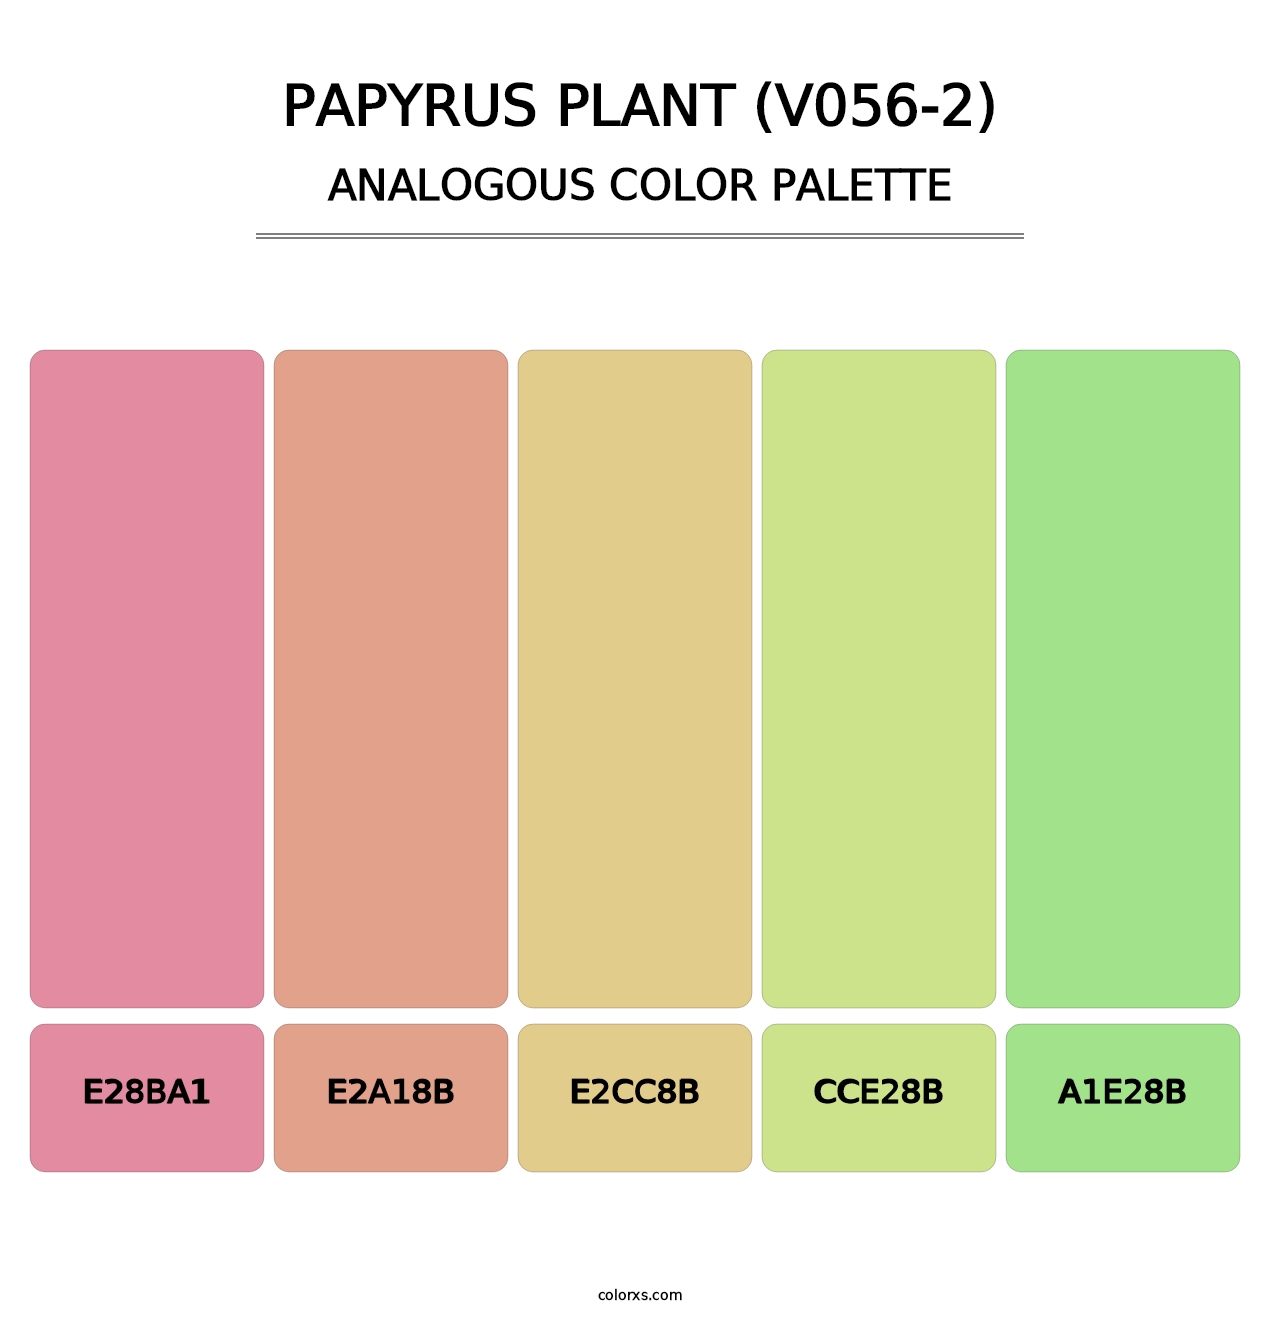 Papyrus Plant (V056-2) - Analogous Color Palette